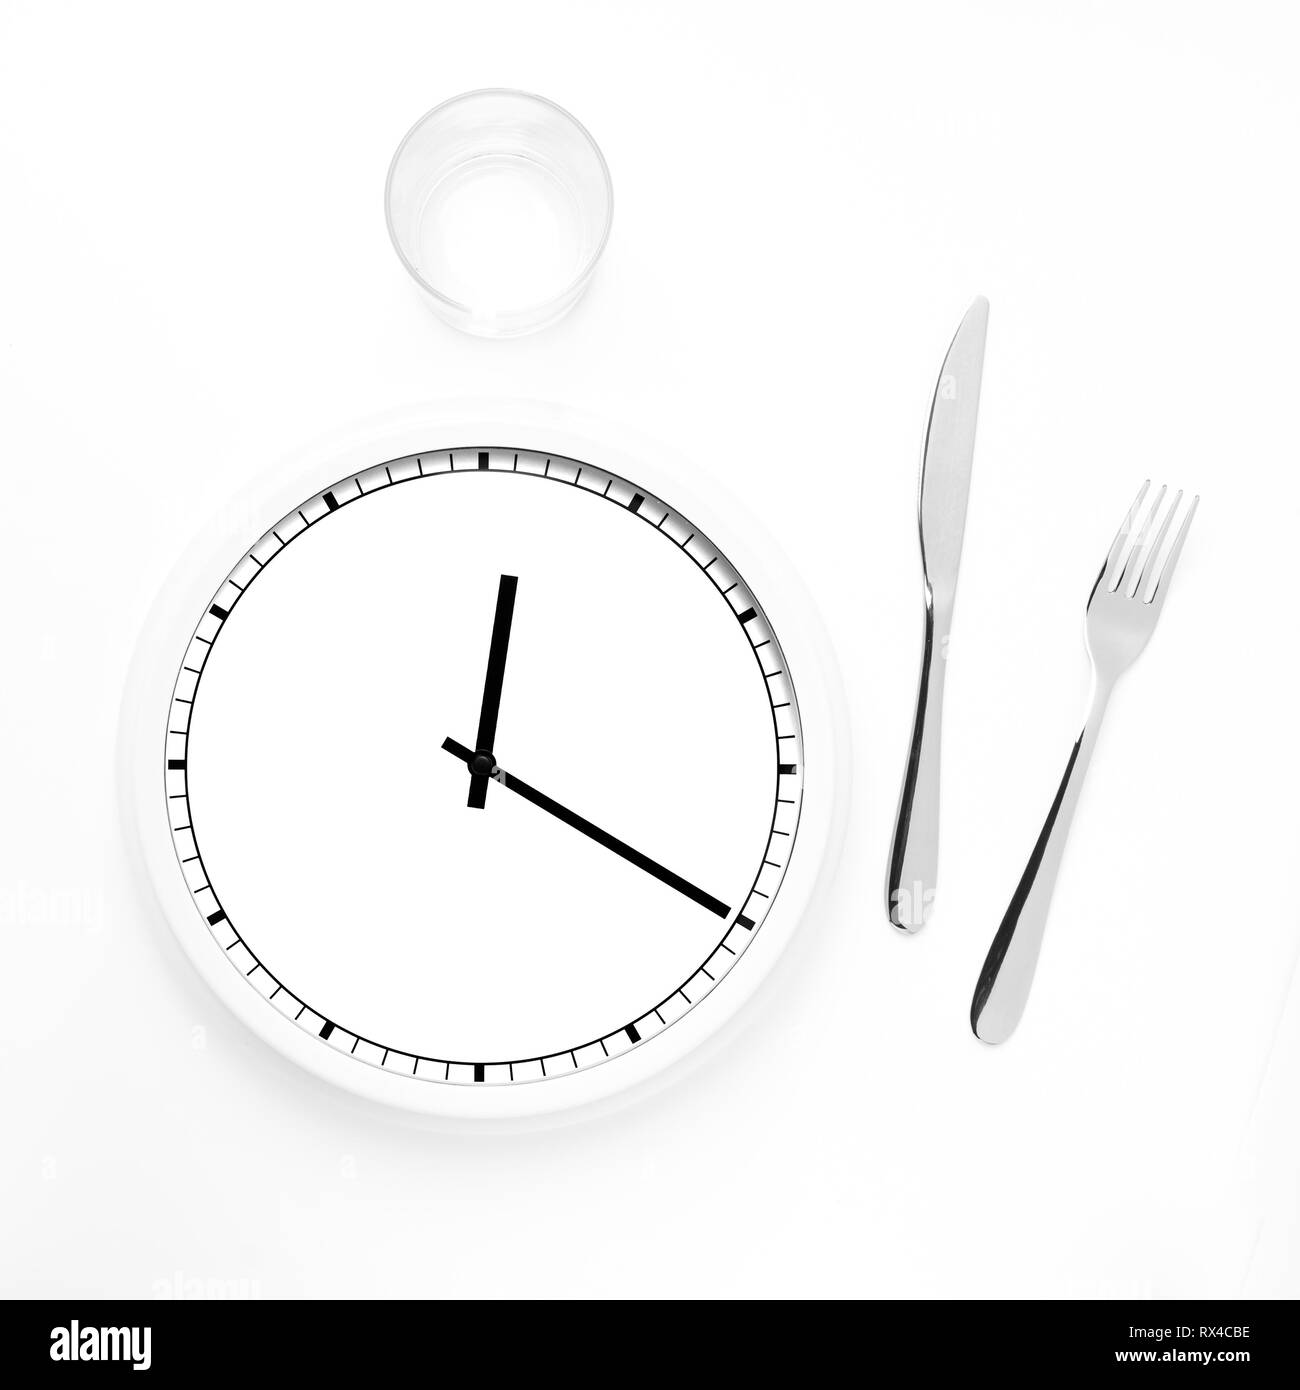 Uhr mit Messer, Gabel und Glas für die Mittagszeit Konzept, Essen,  Ernährung und mehr Stockfotografie - Alamy